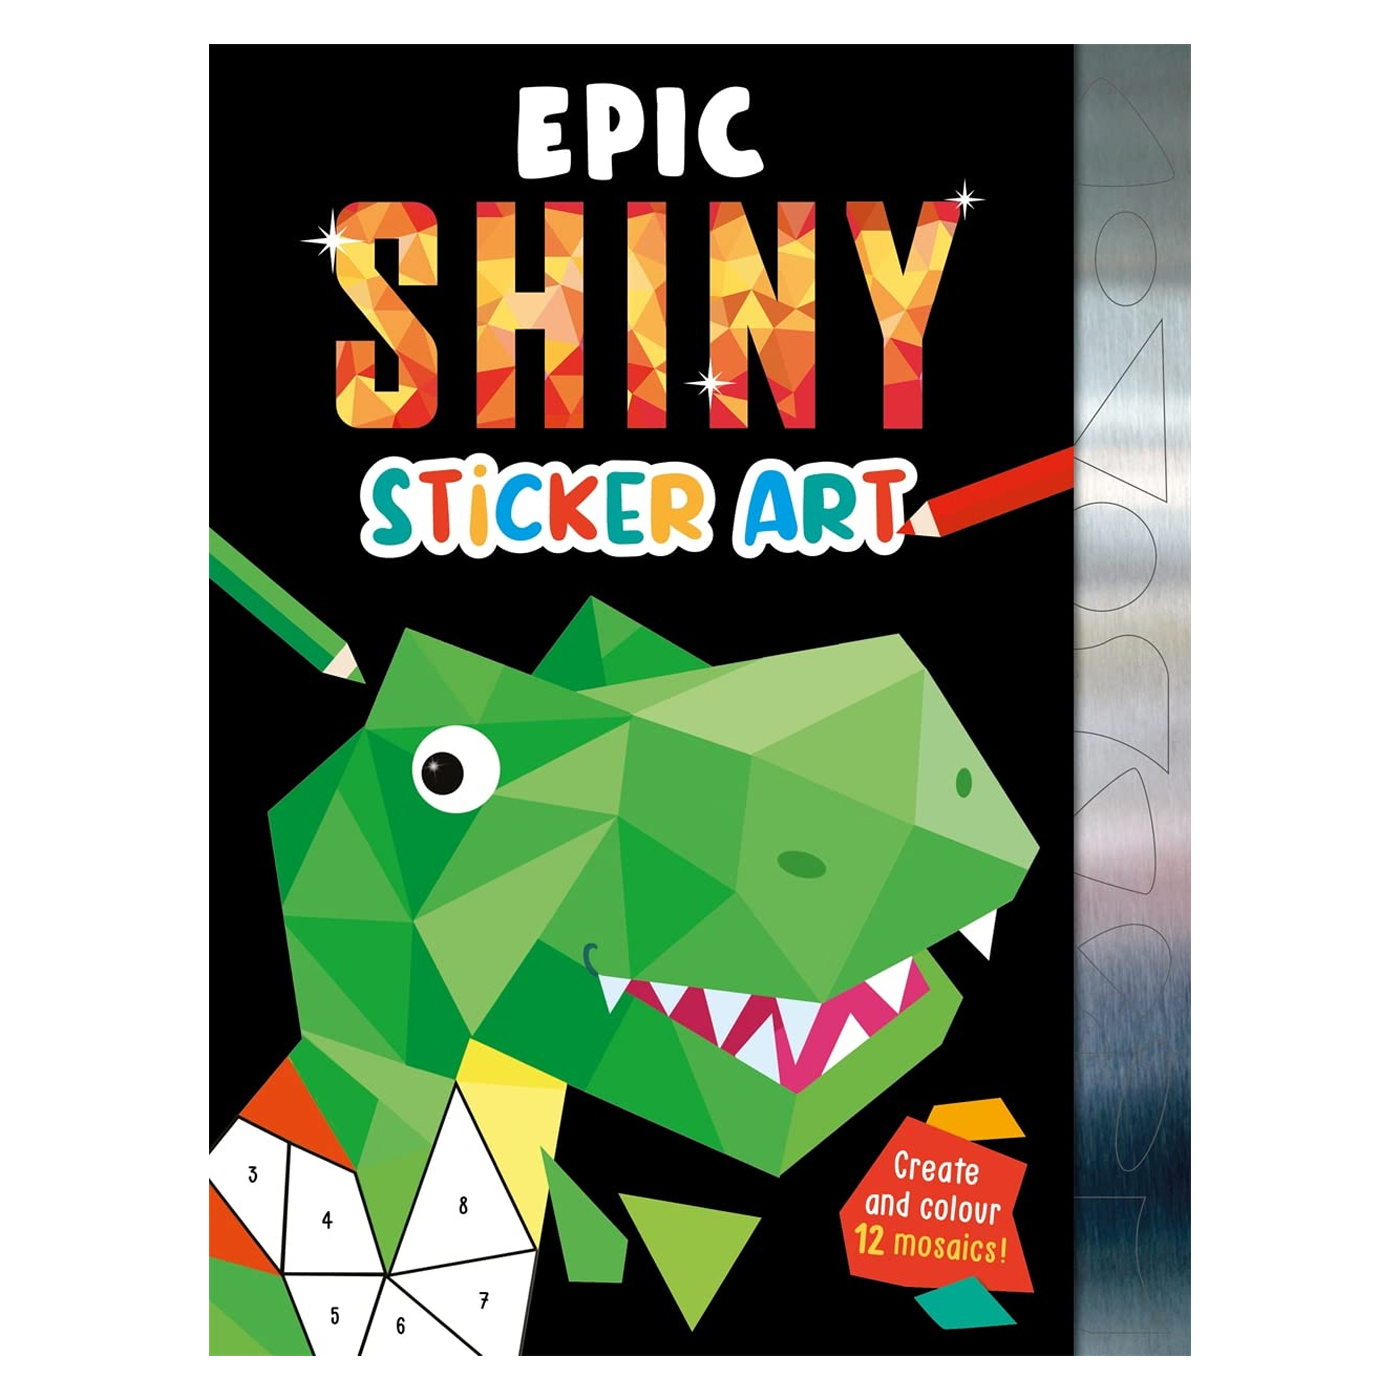  Epic Shiny Sticker Art